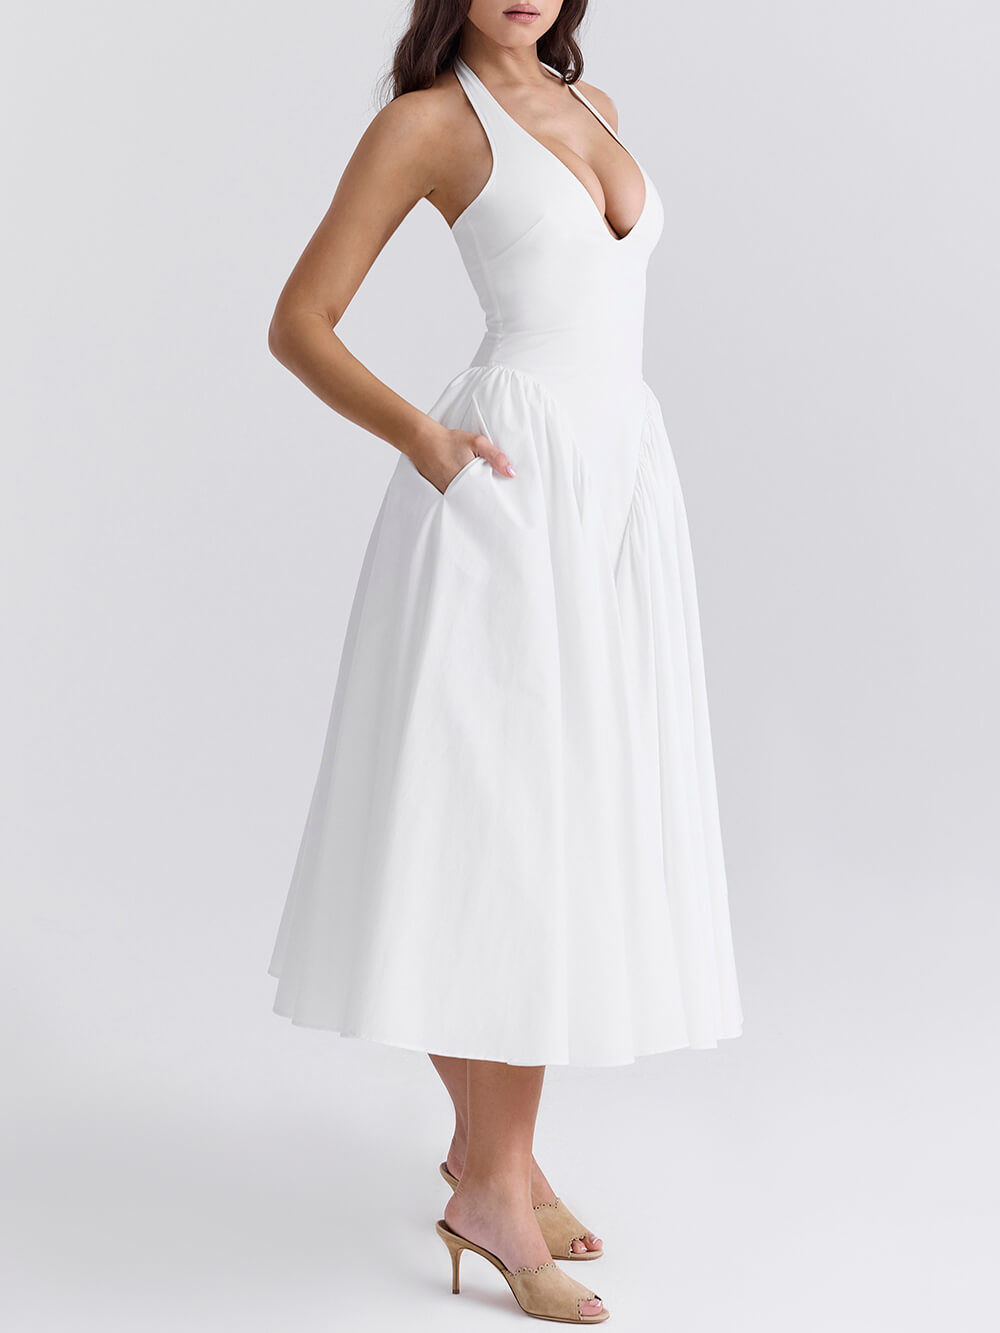 Φορέματα με πλισέ ράψιμο βαθύ V λαιμόκοψη μέσης μονόχρωμα μίντι φορέματα